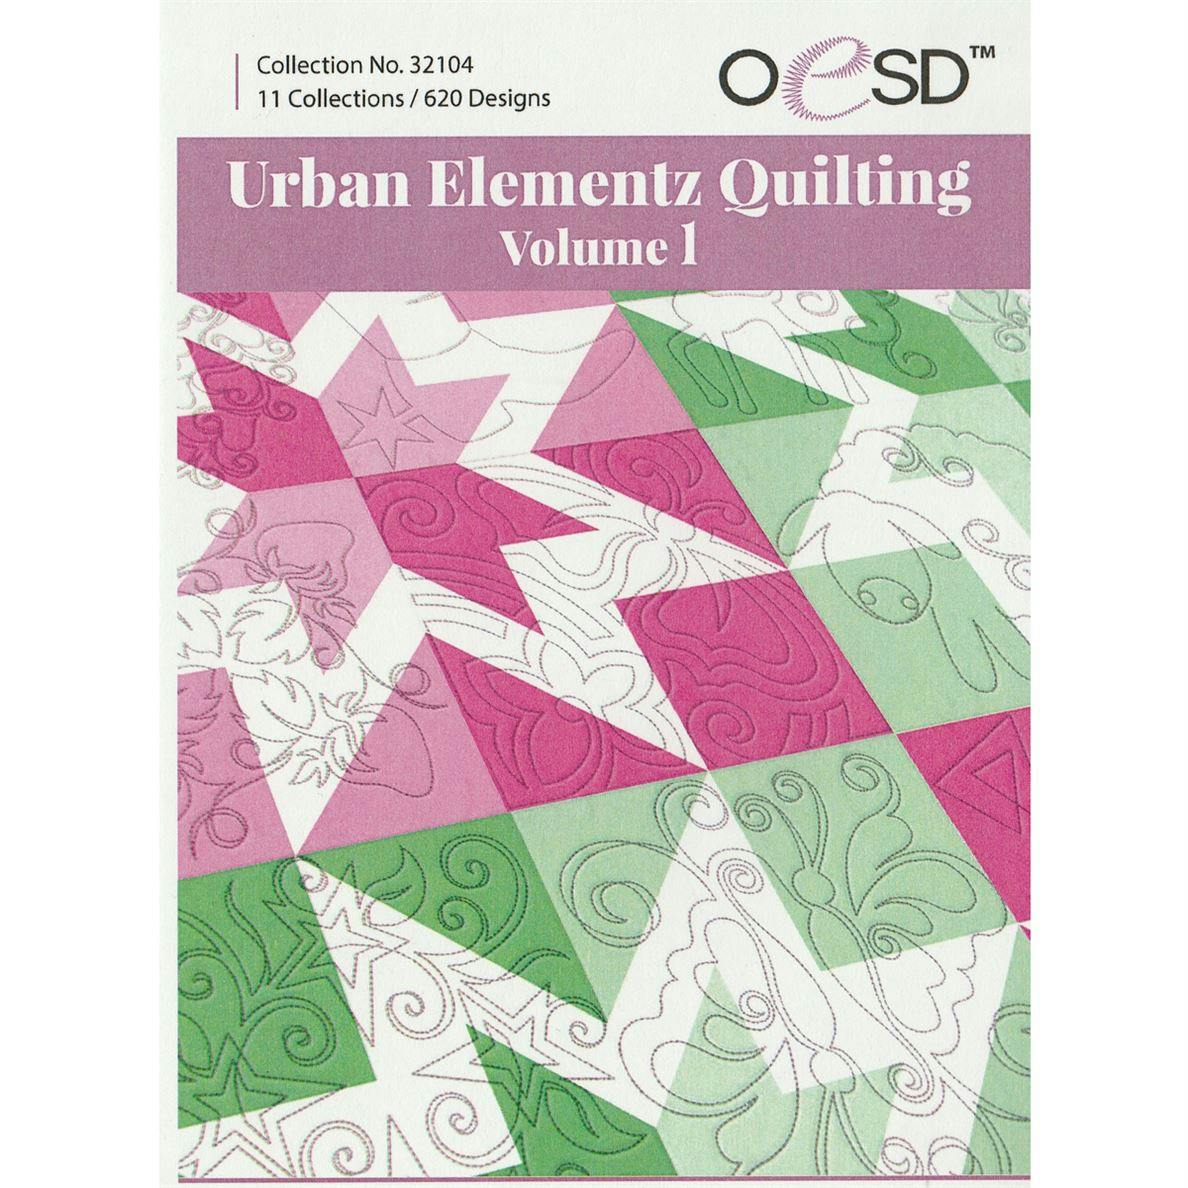 Urban Elementz Quilting Vol 1 collection